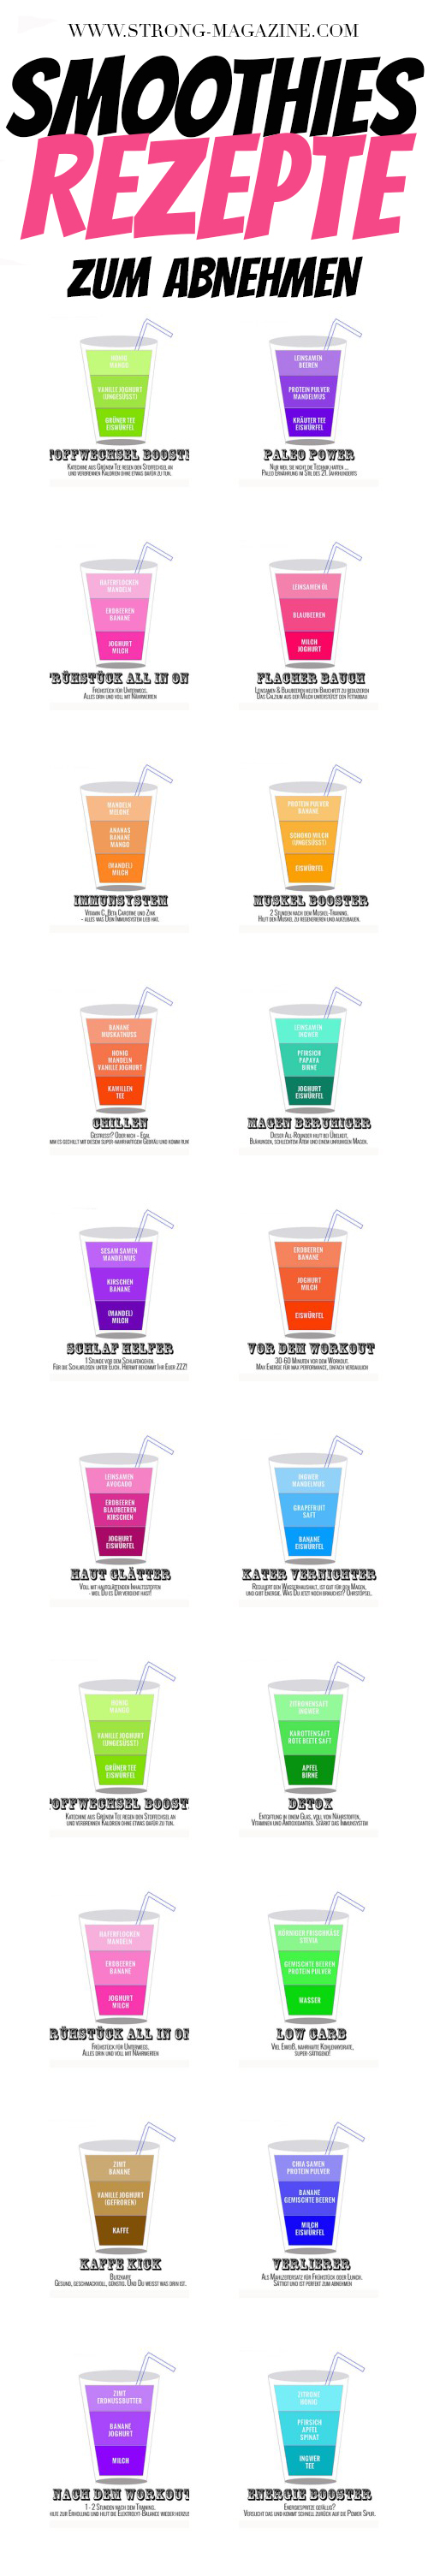 Smoothies Rezepte zum Abnehmen - die Infografik für Smoothie Rezepte